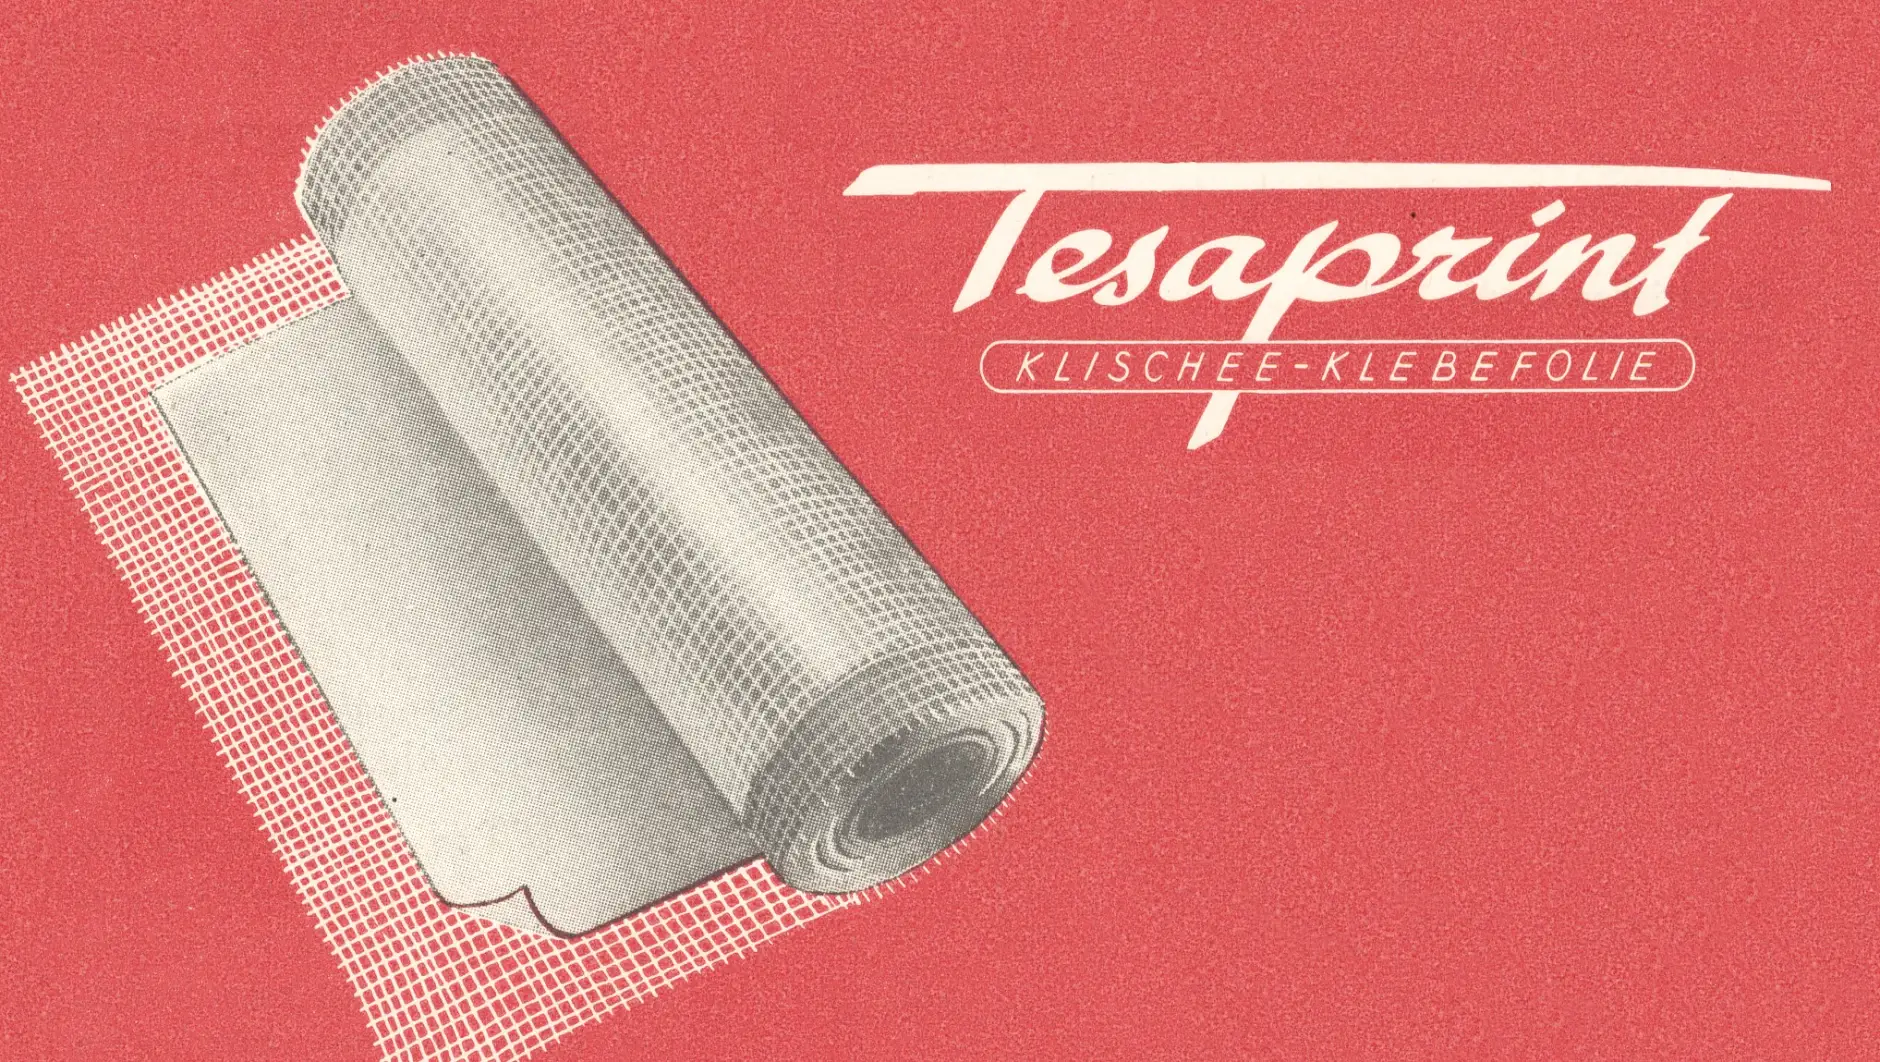 tesaprint användes redan 1949 inom tryckeribranschen.